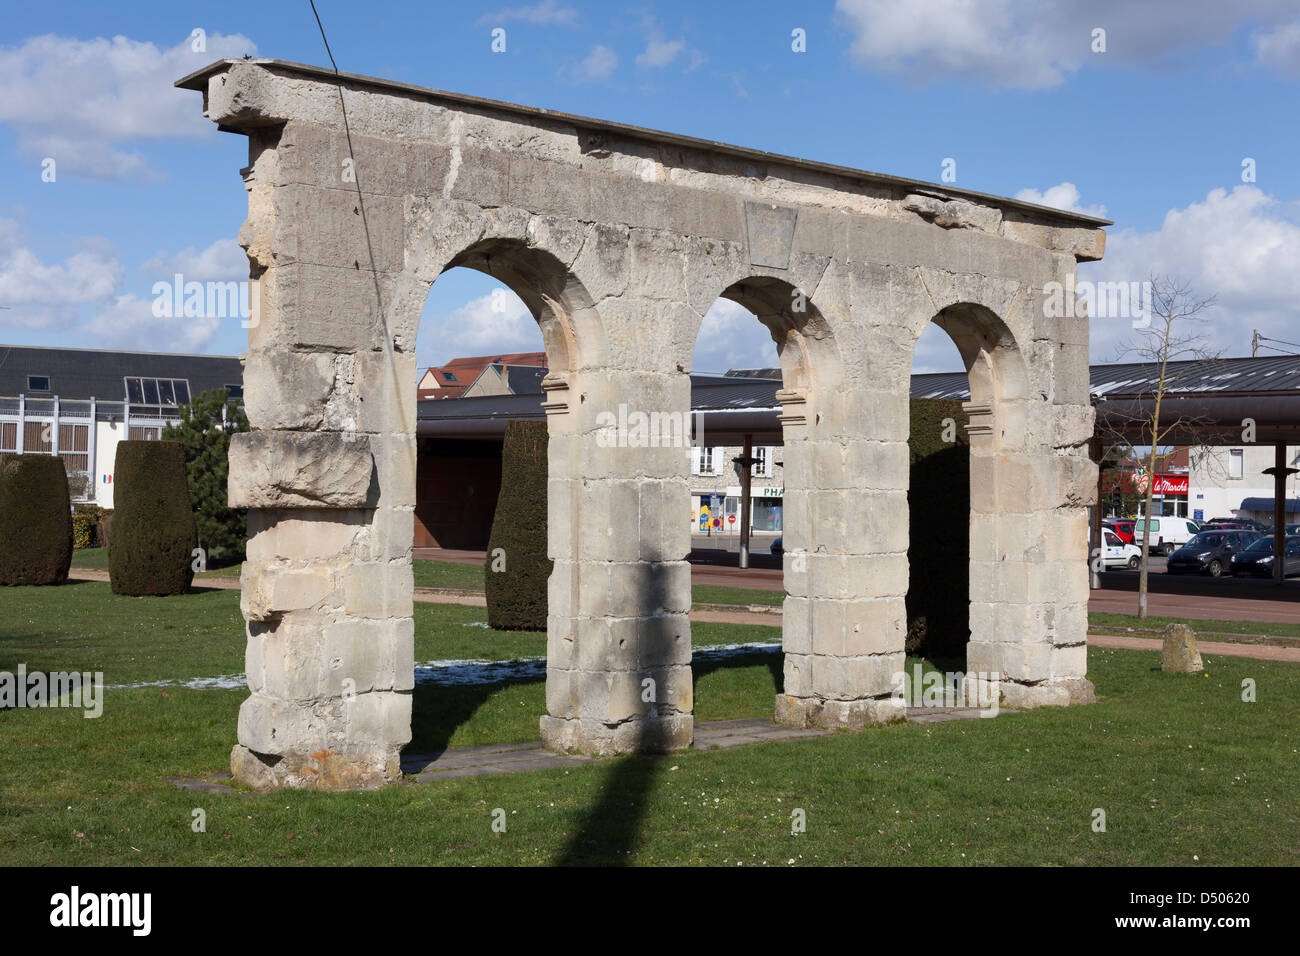 Arches of former château de Beuron (original location: Perdreauville), Bonnières-sur-Seine, Yvelines, France Stock Photo